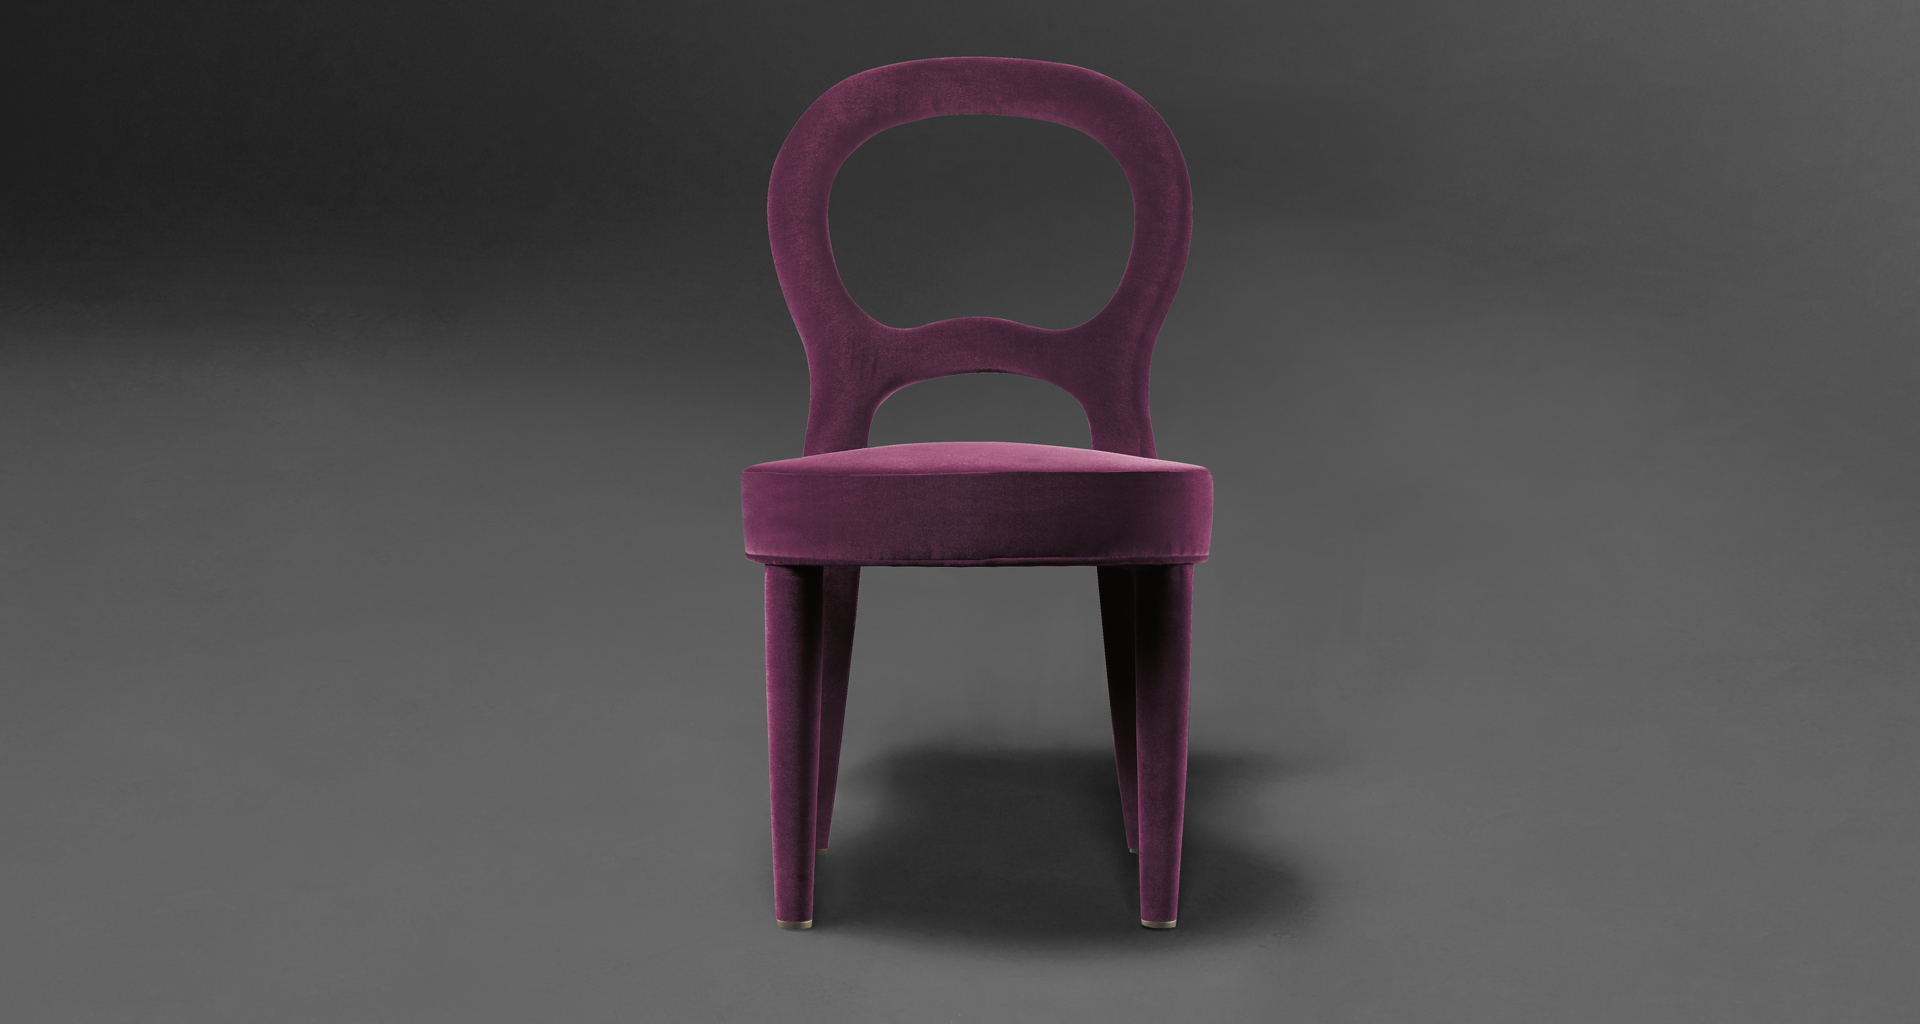 Bilou Bilou è una sedia da pranzo rivestita in velluto e lino o pelle nappa disponibile in diversi colori e nelle versioni standard, large e kids. Bilou Bilou è la più iconica delle sedie da pranzo del catalogo di Promemoria | Promemoria